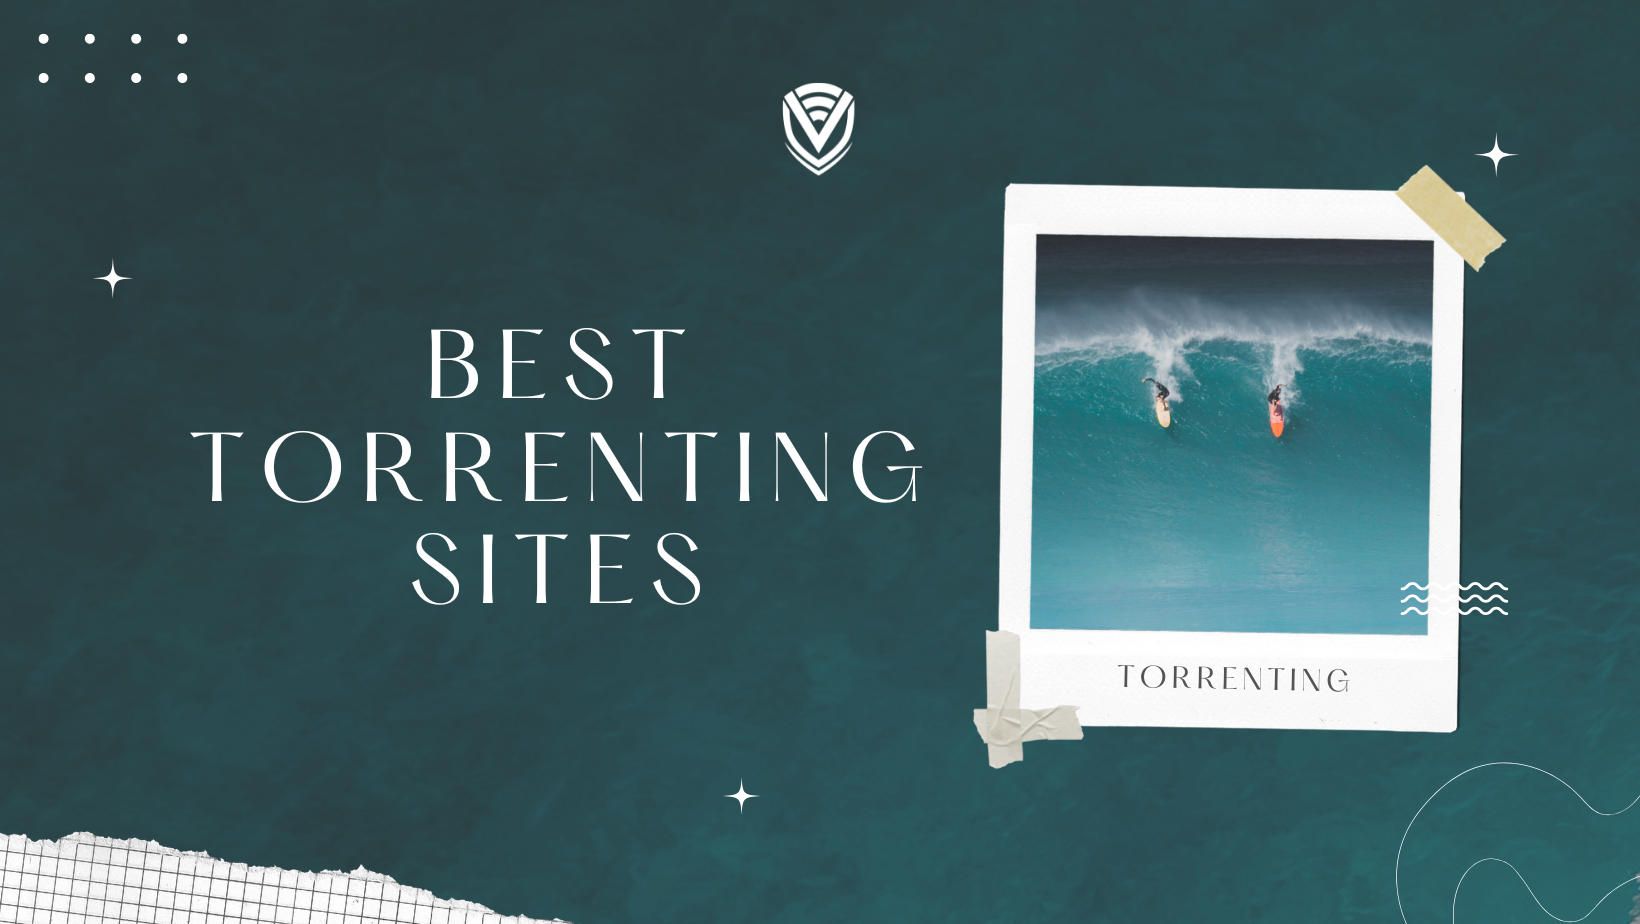 Best Torrenting Sites